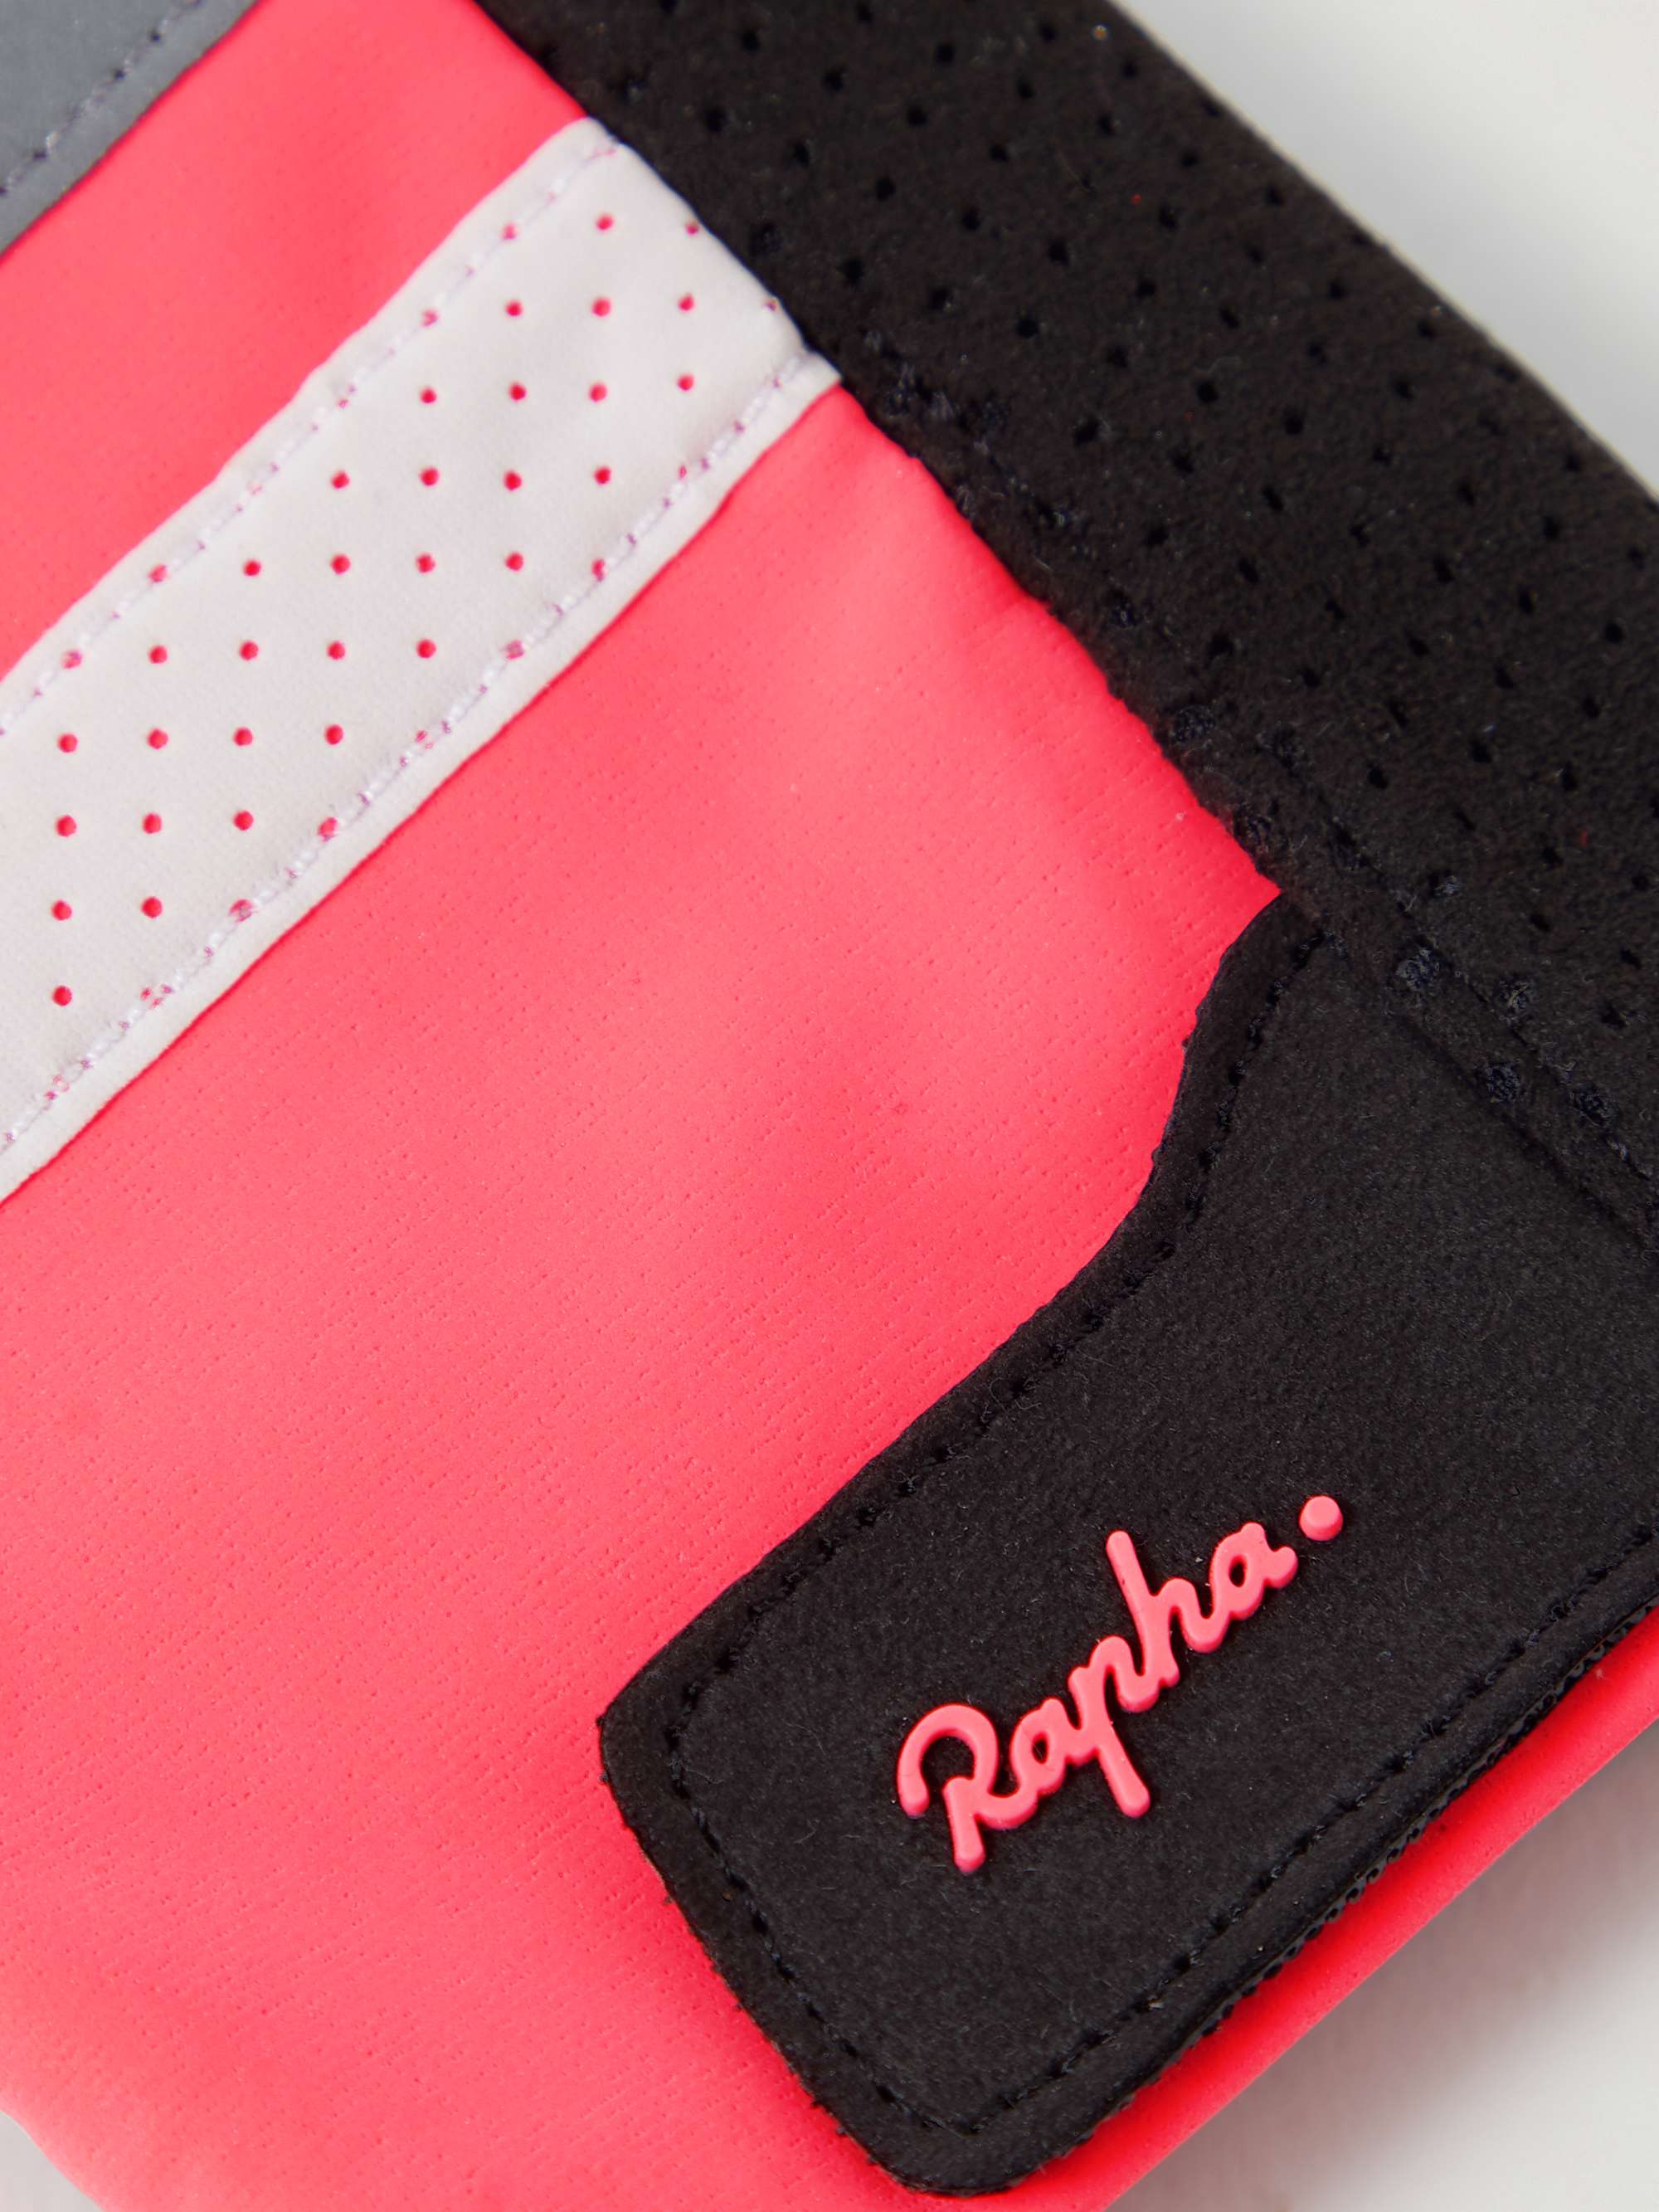 RAPHA Brevet Radsport-Handschuhe aus Polartec®-Material mit reflektierenden Details